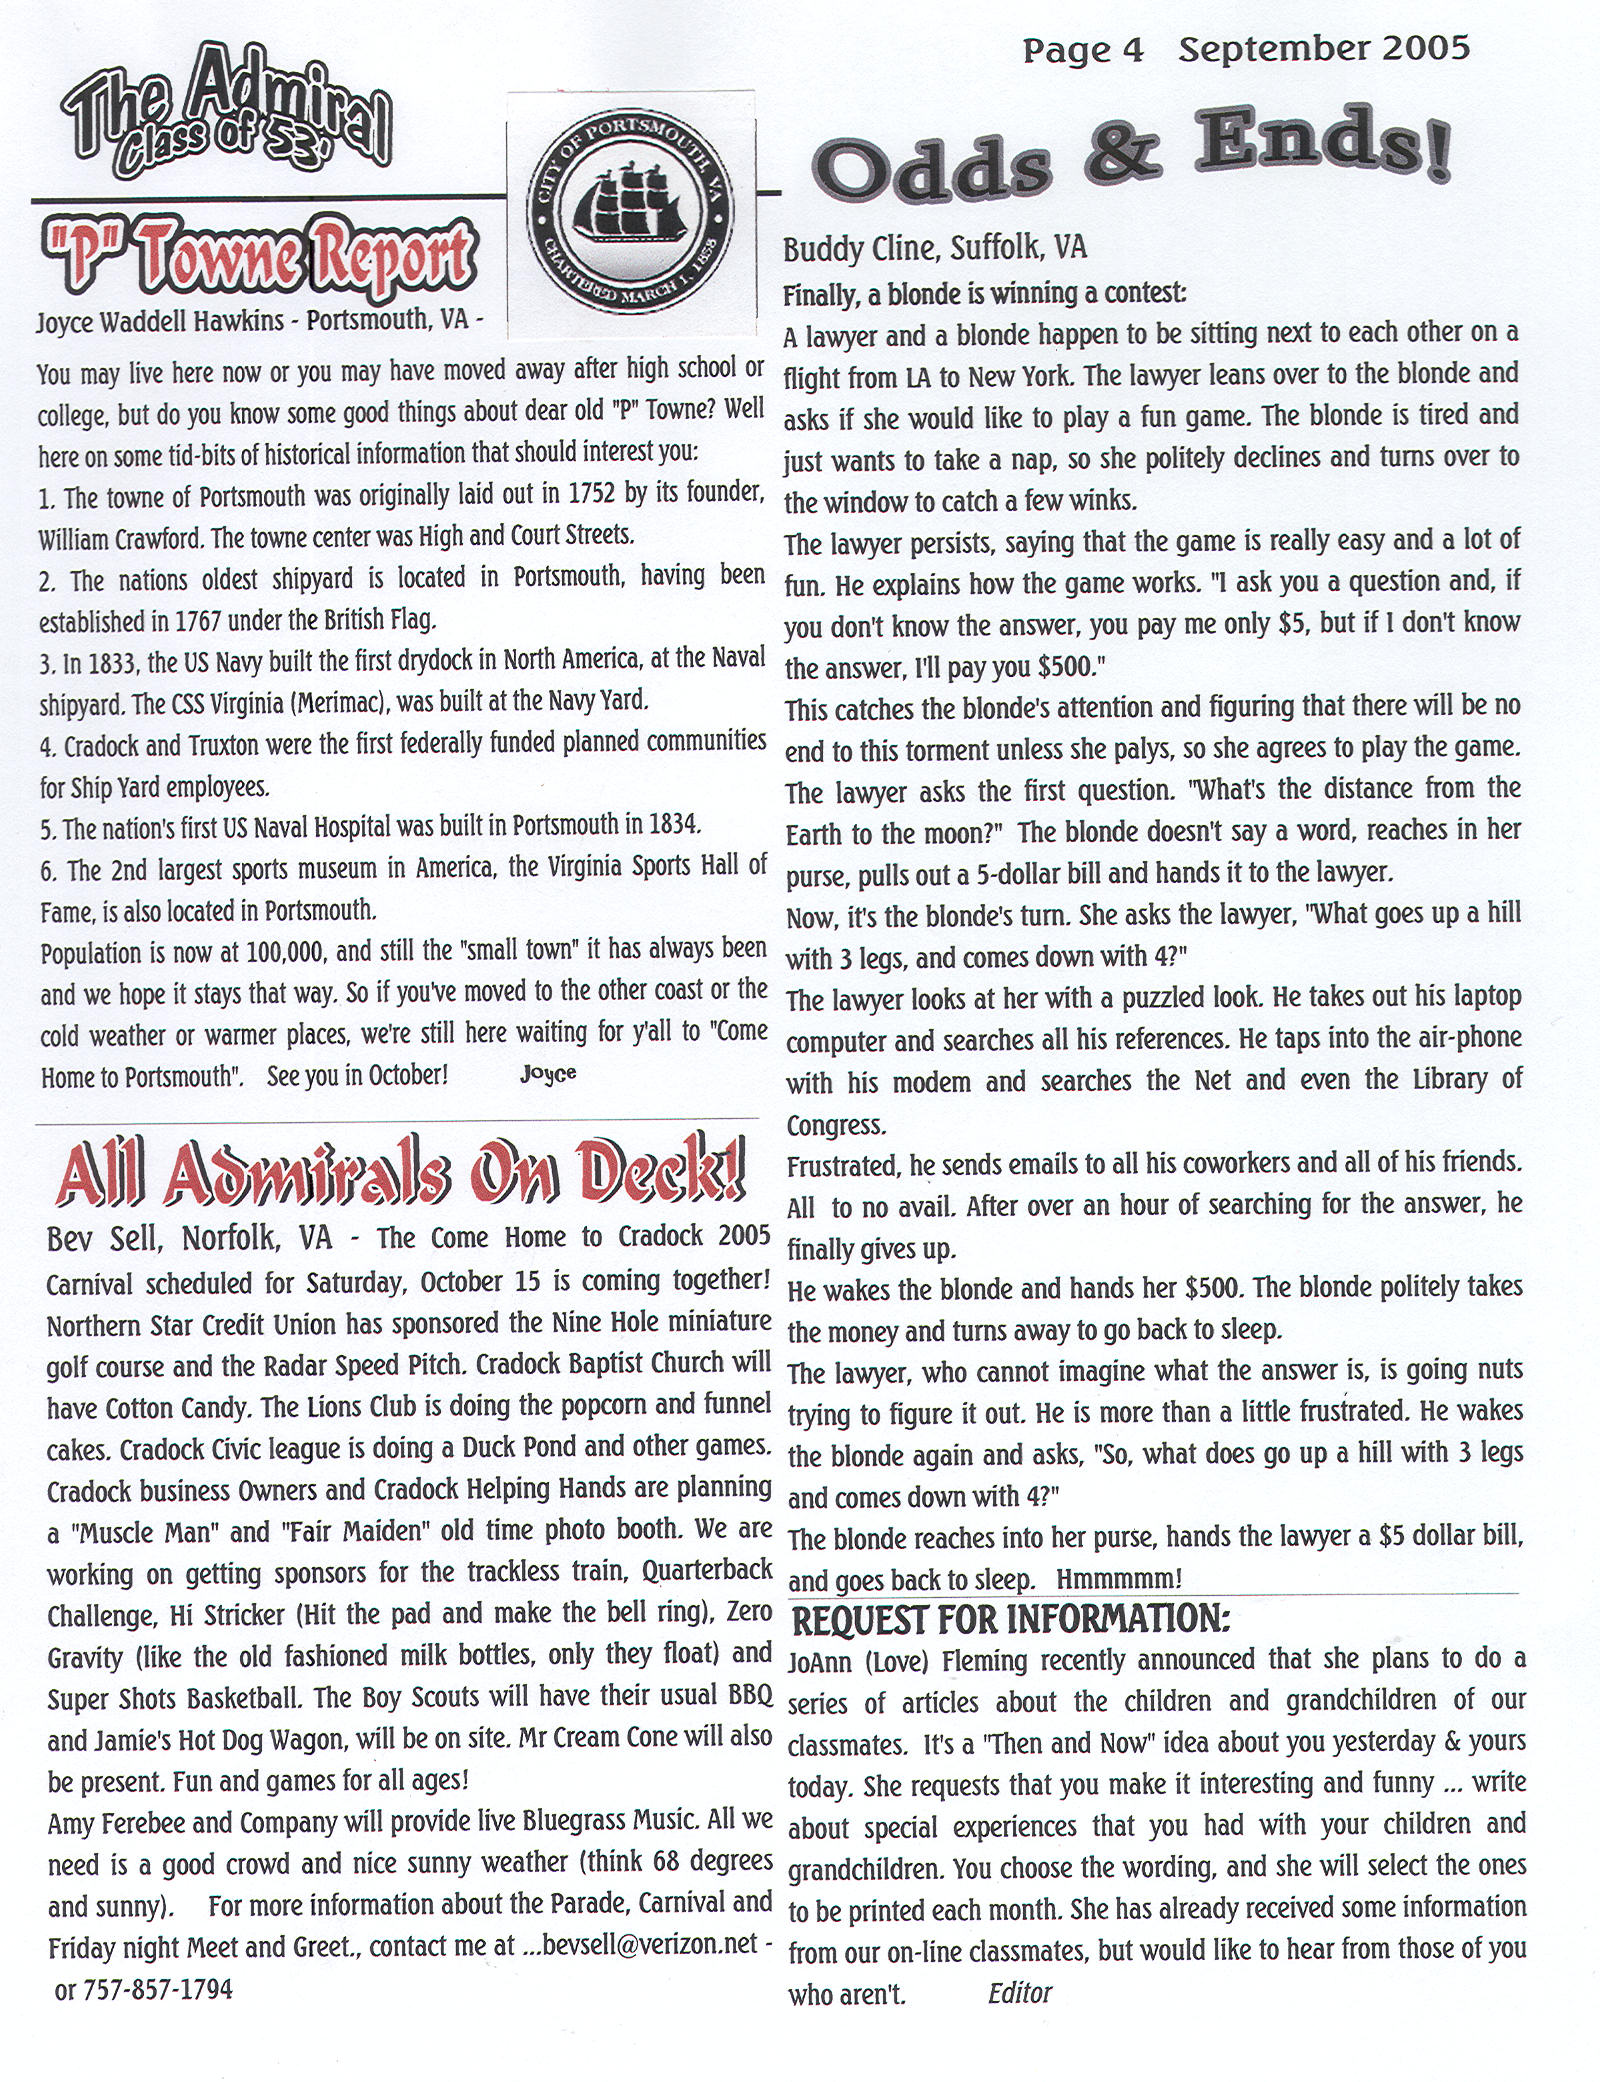 The Admiral - September 2005 - pg. 4